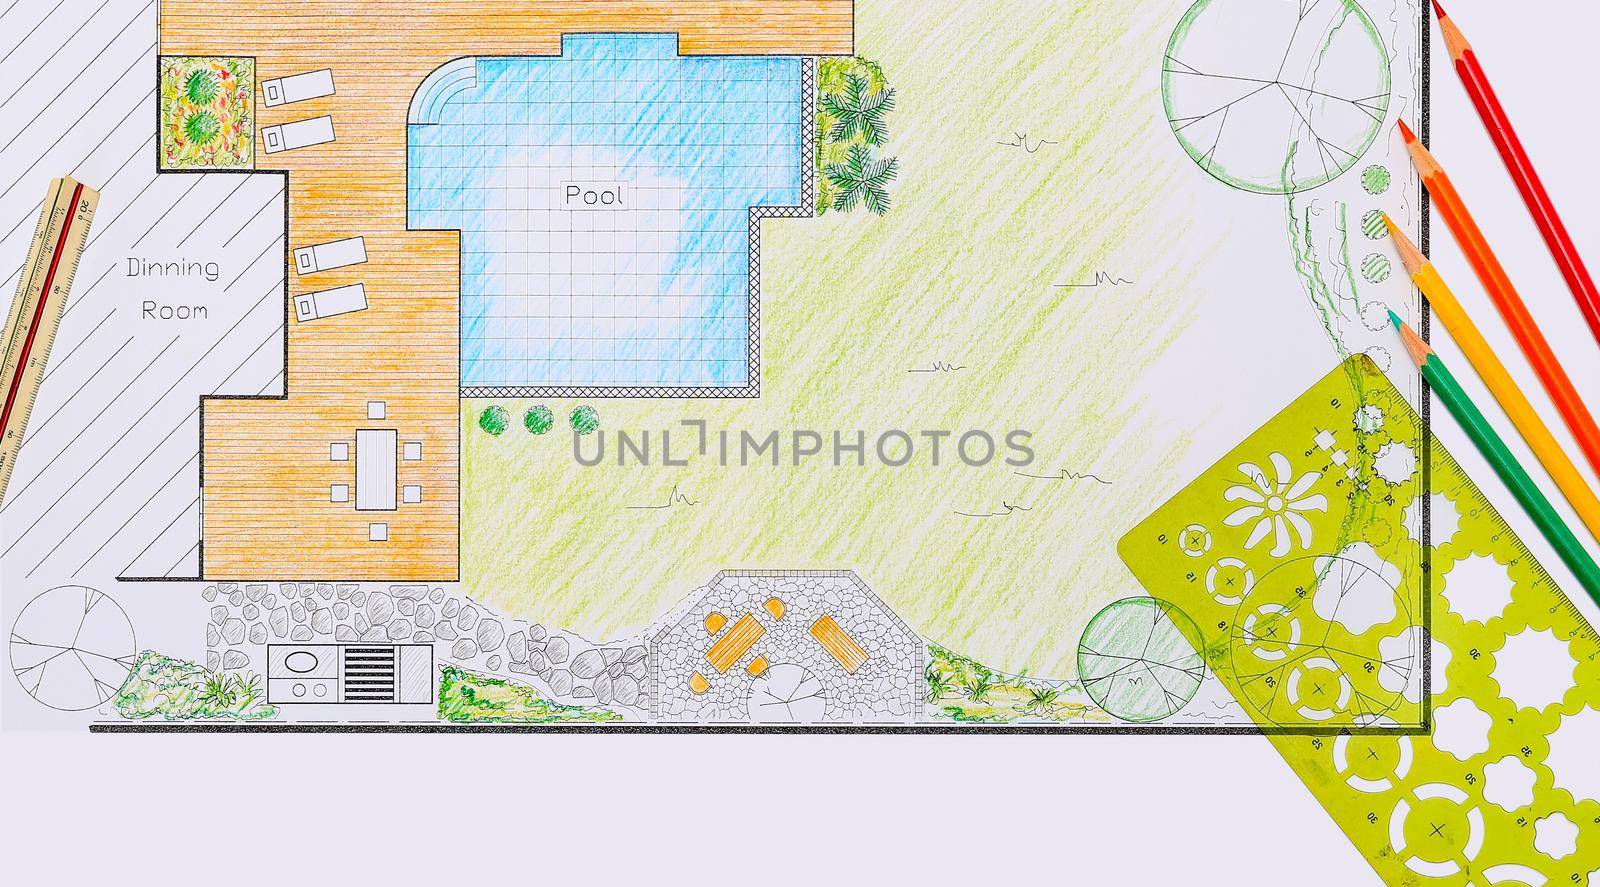 Backyard garden and pool design plan for villa. by toa55